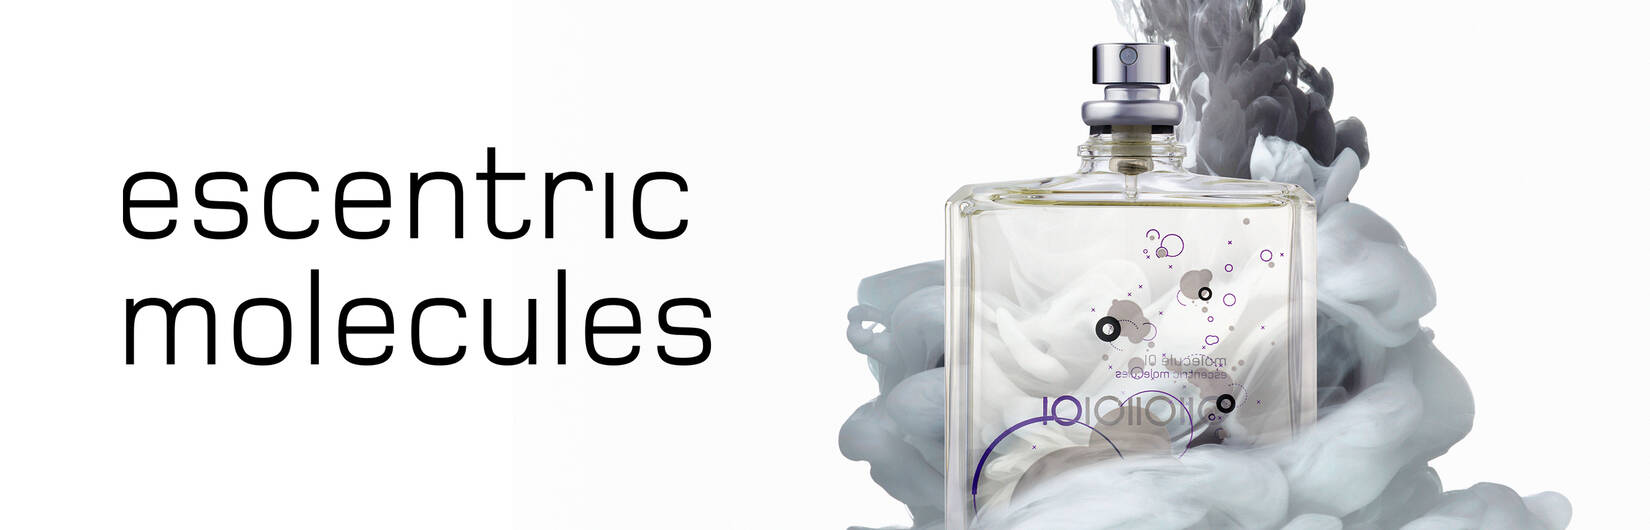 Escentric Molecules parfume - Se tilbud og køb hos